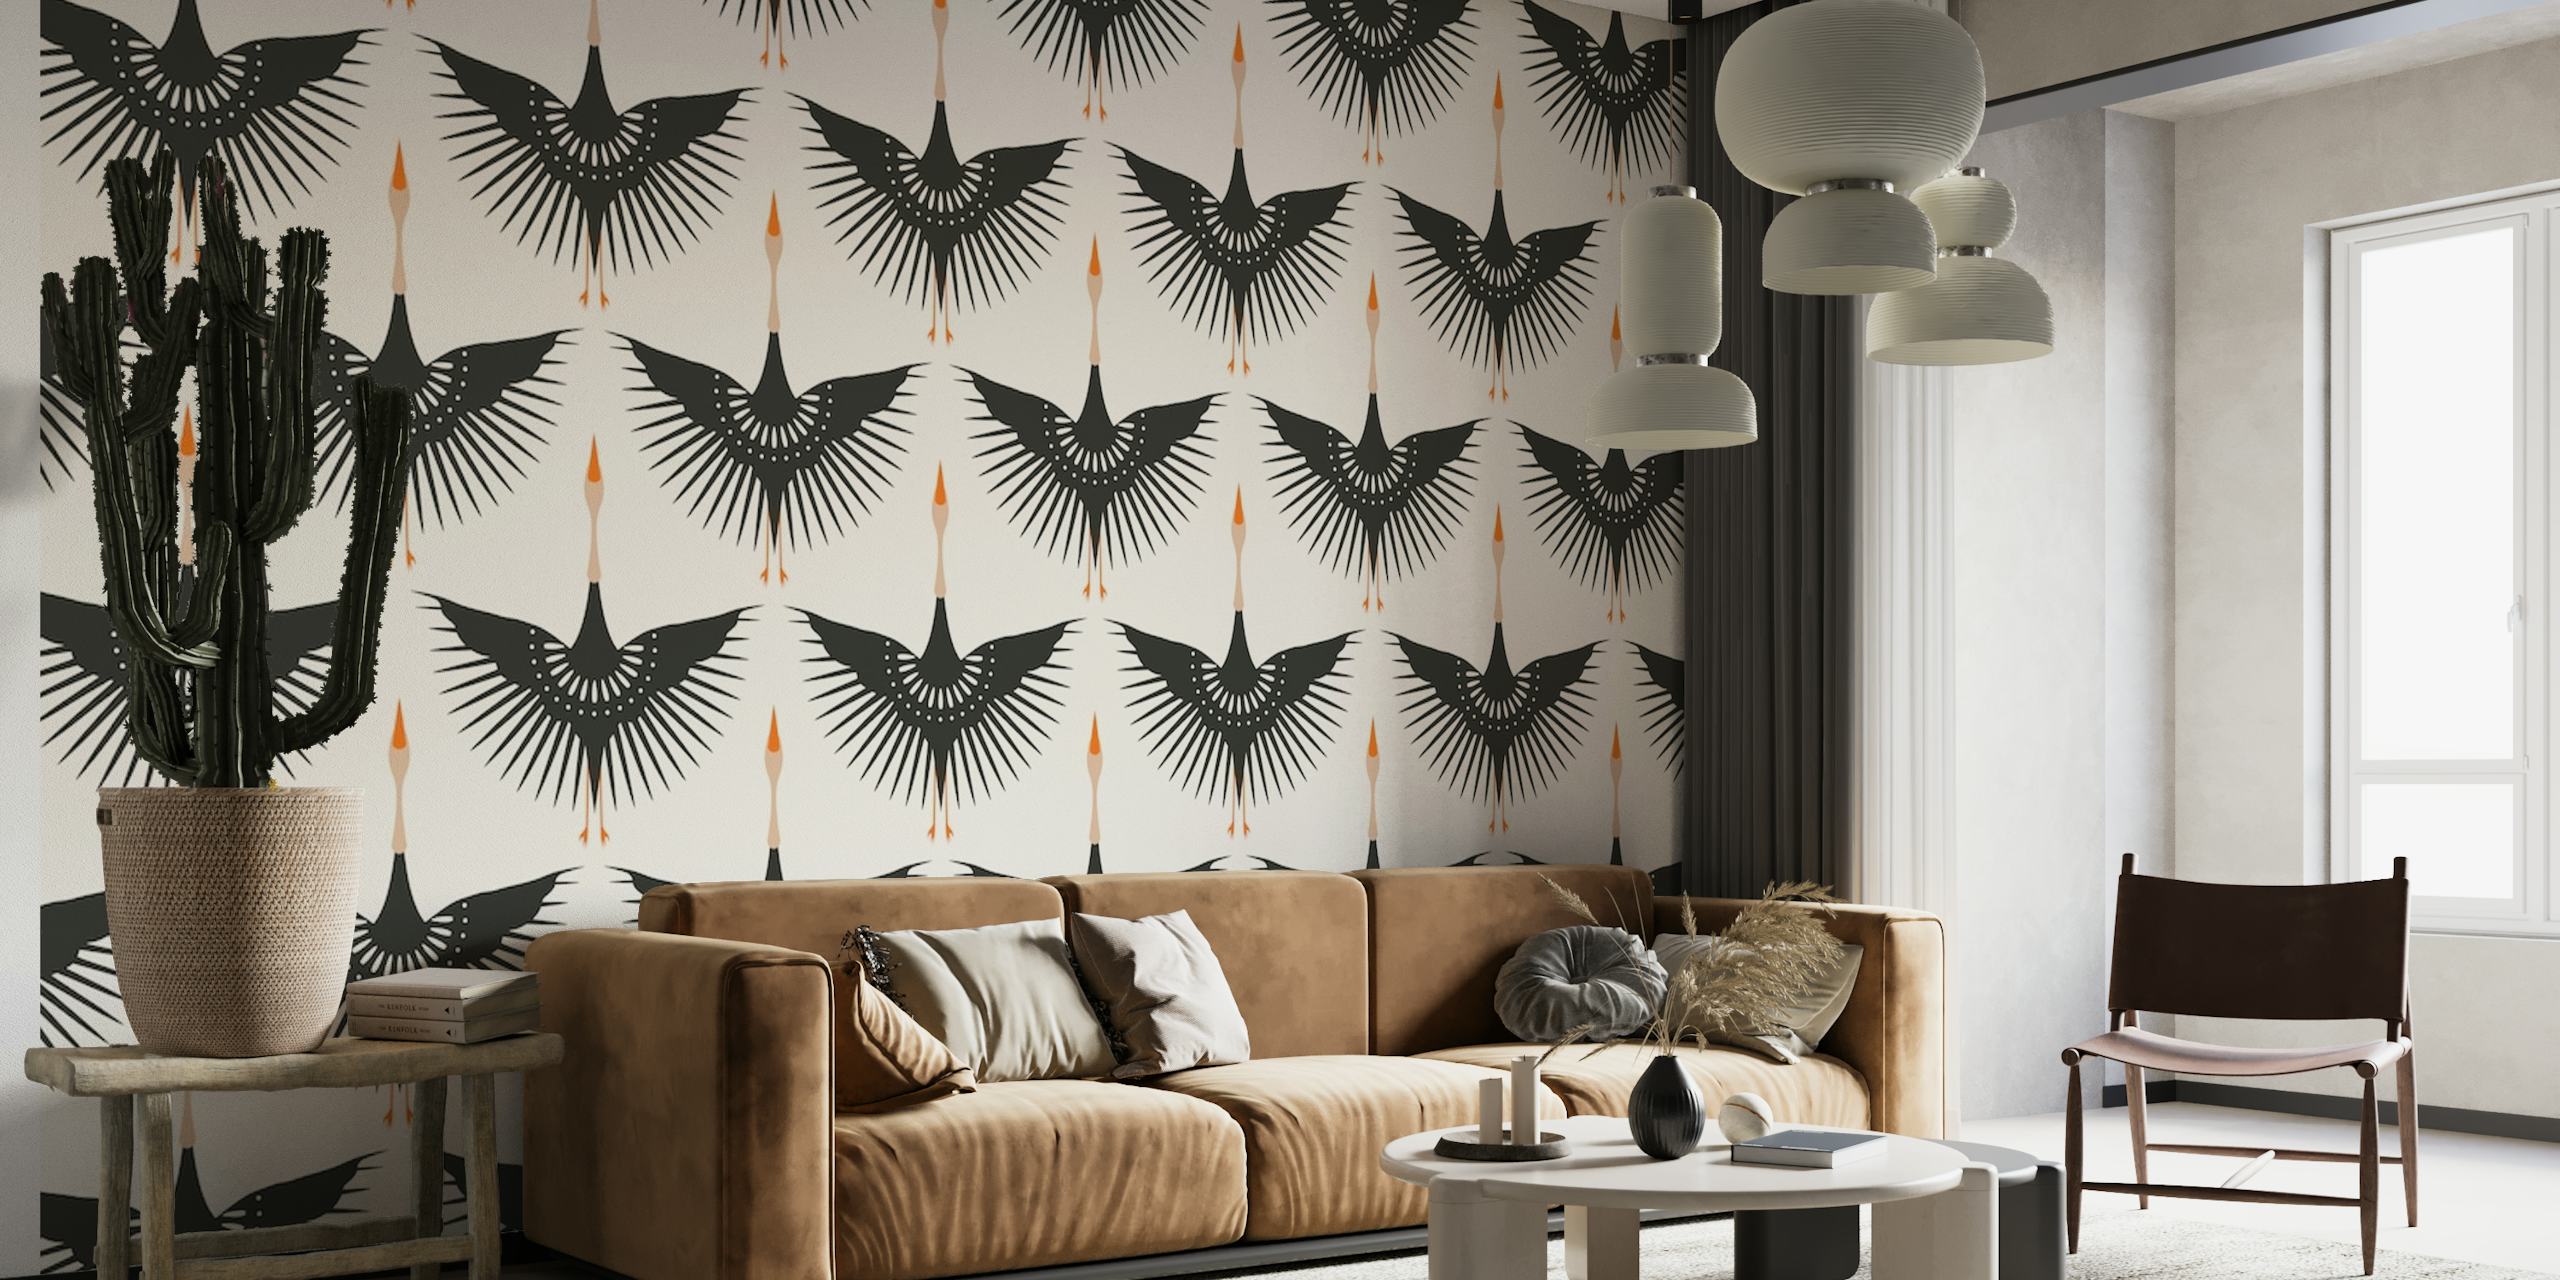 Flying Cranes Art Deco behang